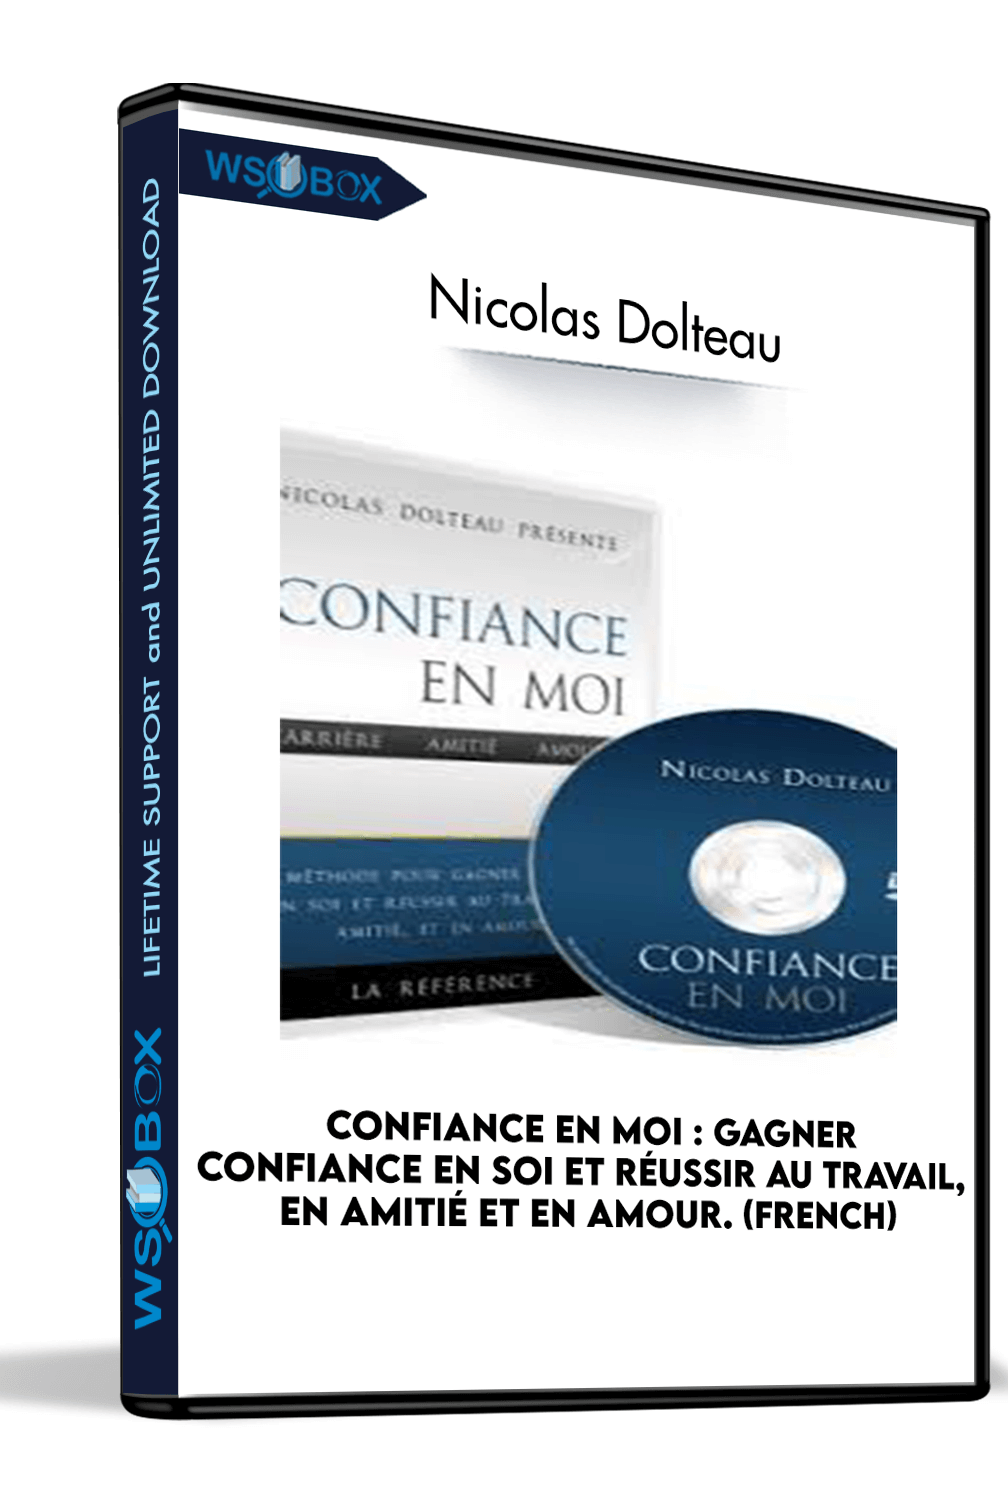 Confiance En Moi : Gagner confiance en soi et réussir au travail, en amitié et en amour. (French) – Nicolas Dolteau